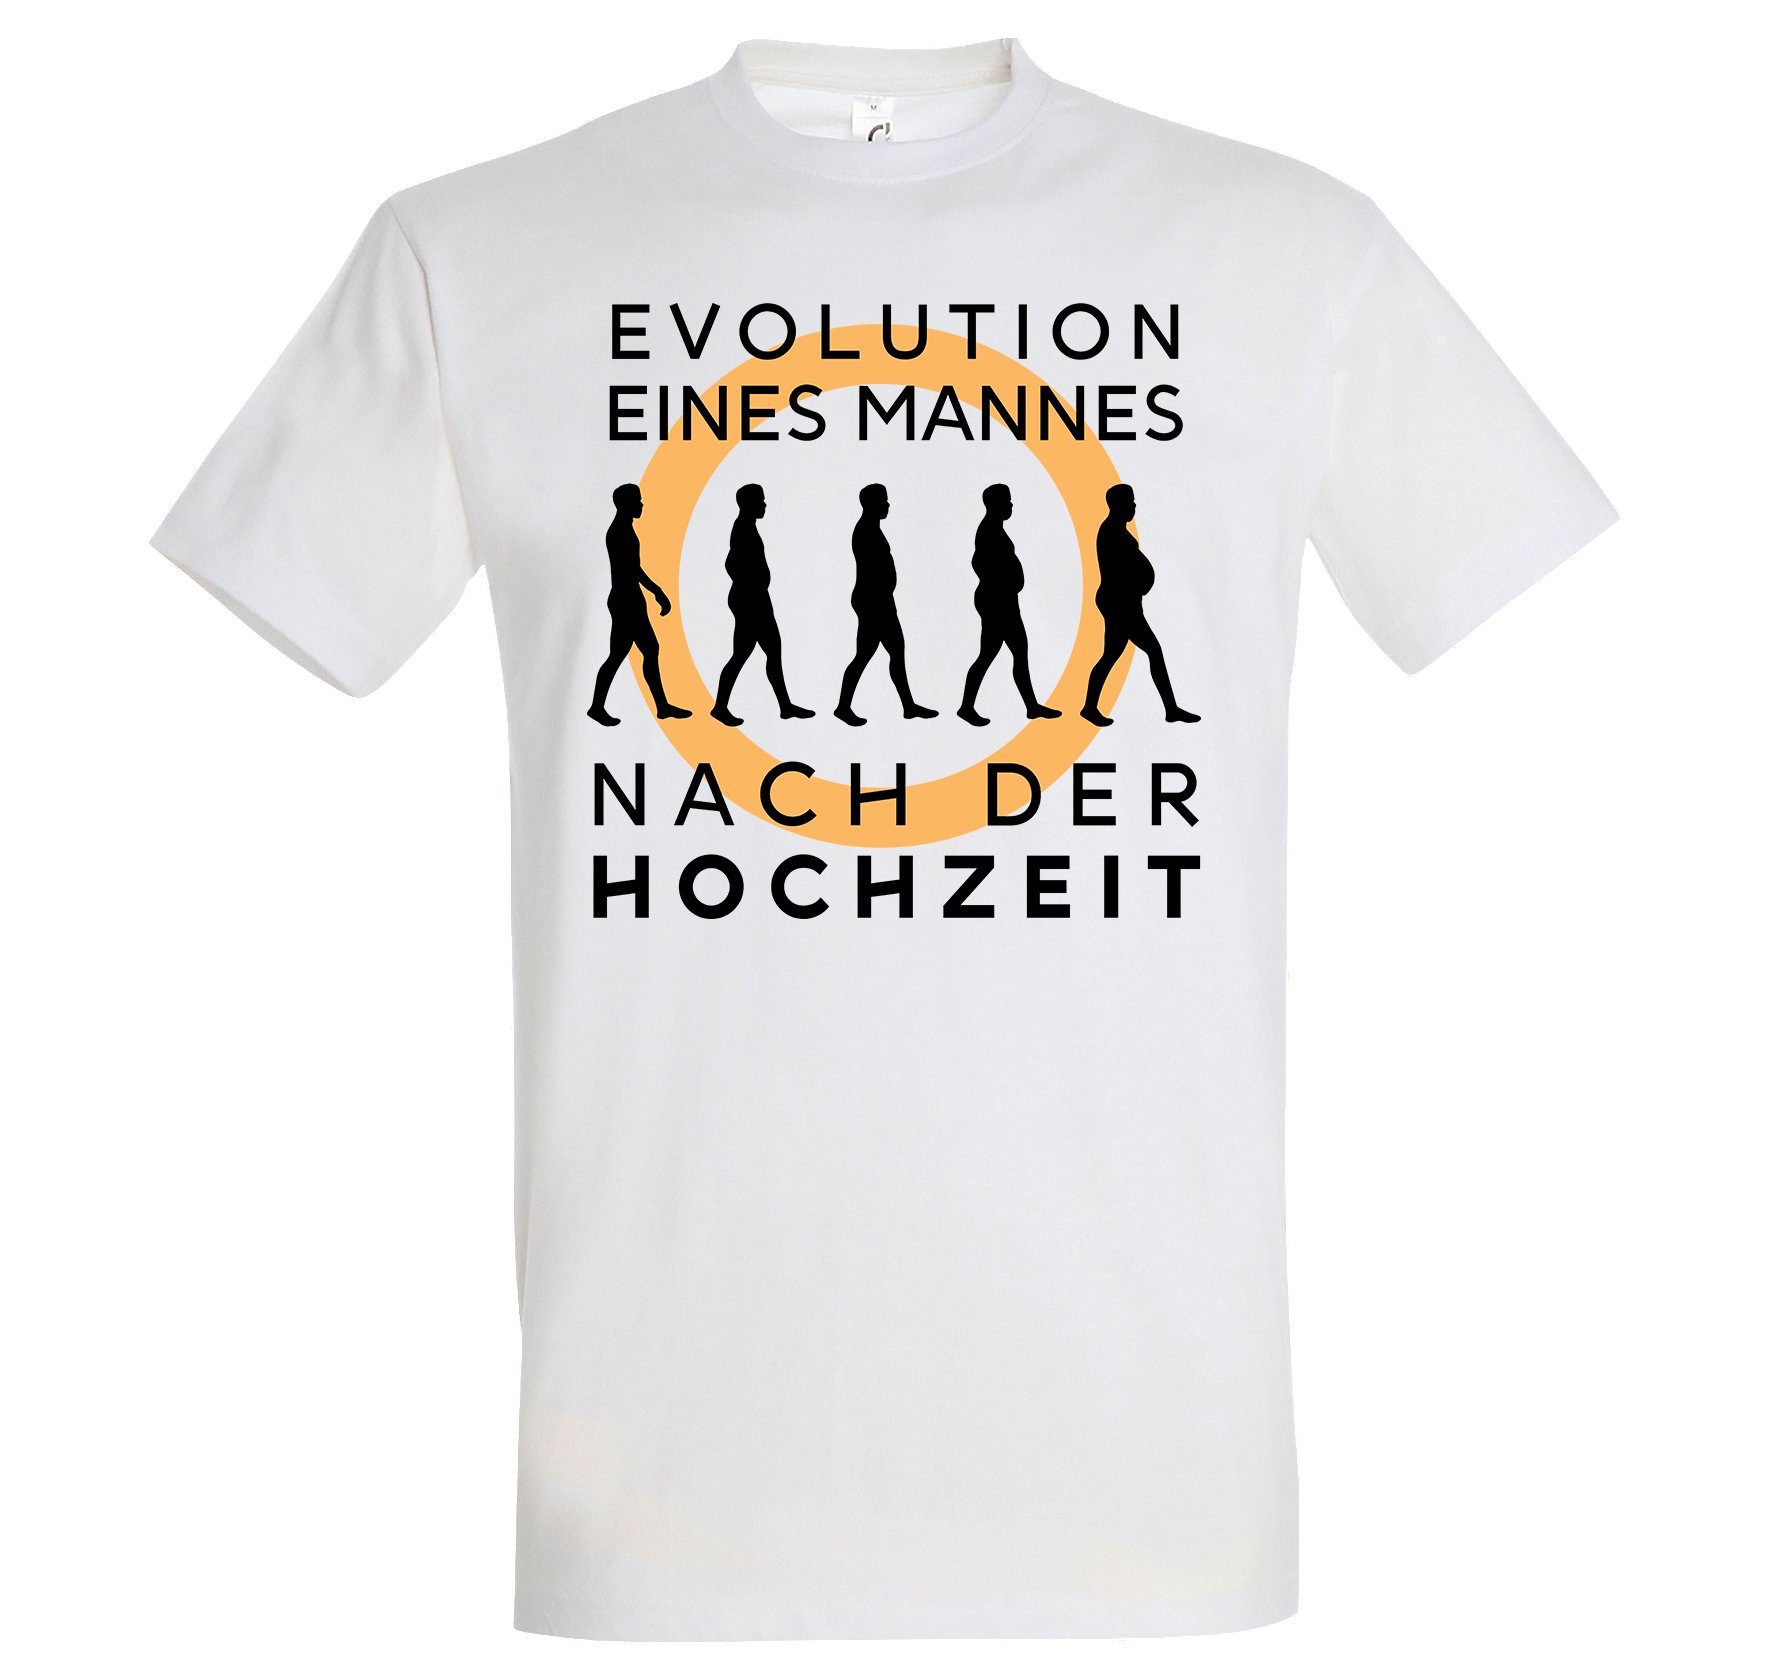 Sofortiger Versand Youth Designz Evolution trendigem Frontprint mit Herren Weiß T-Shirt nach der Hochzeit Shirt